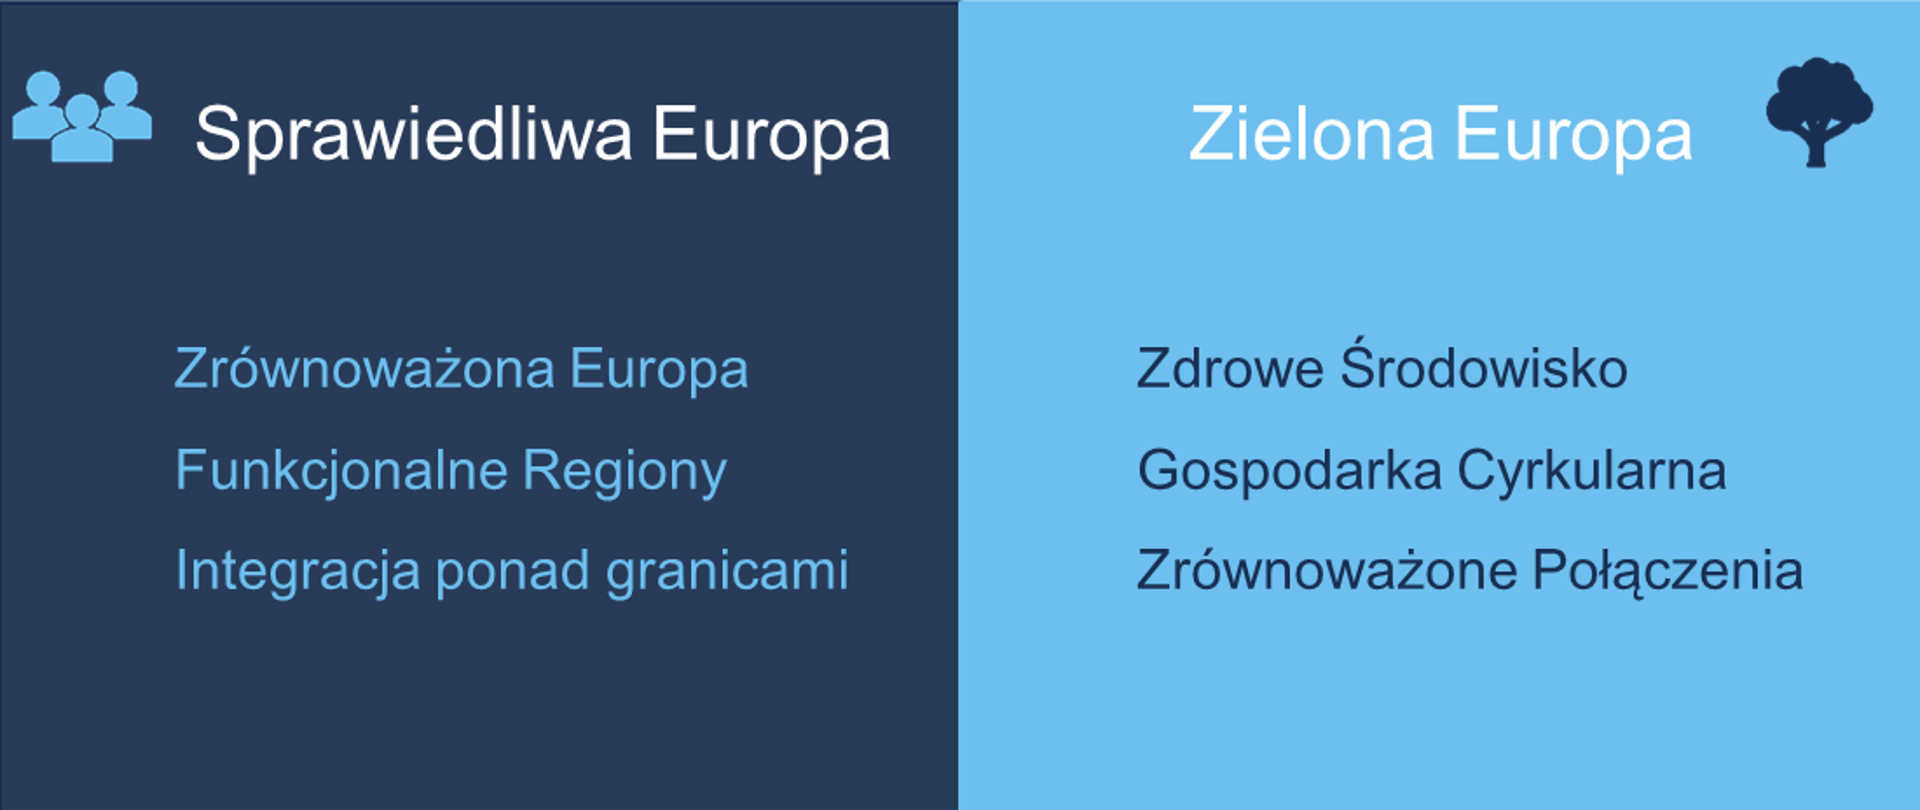 Grafika podzielona na dwa kolory granatowy i niebieski. Od lewej napis "Sprawiedliwa Europa", przed nim ikonka symbolizująca osoby. Po prawej napis "Zielona Europa" a za nim symbol drzewa.